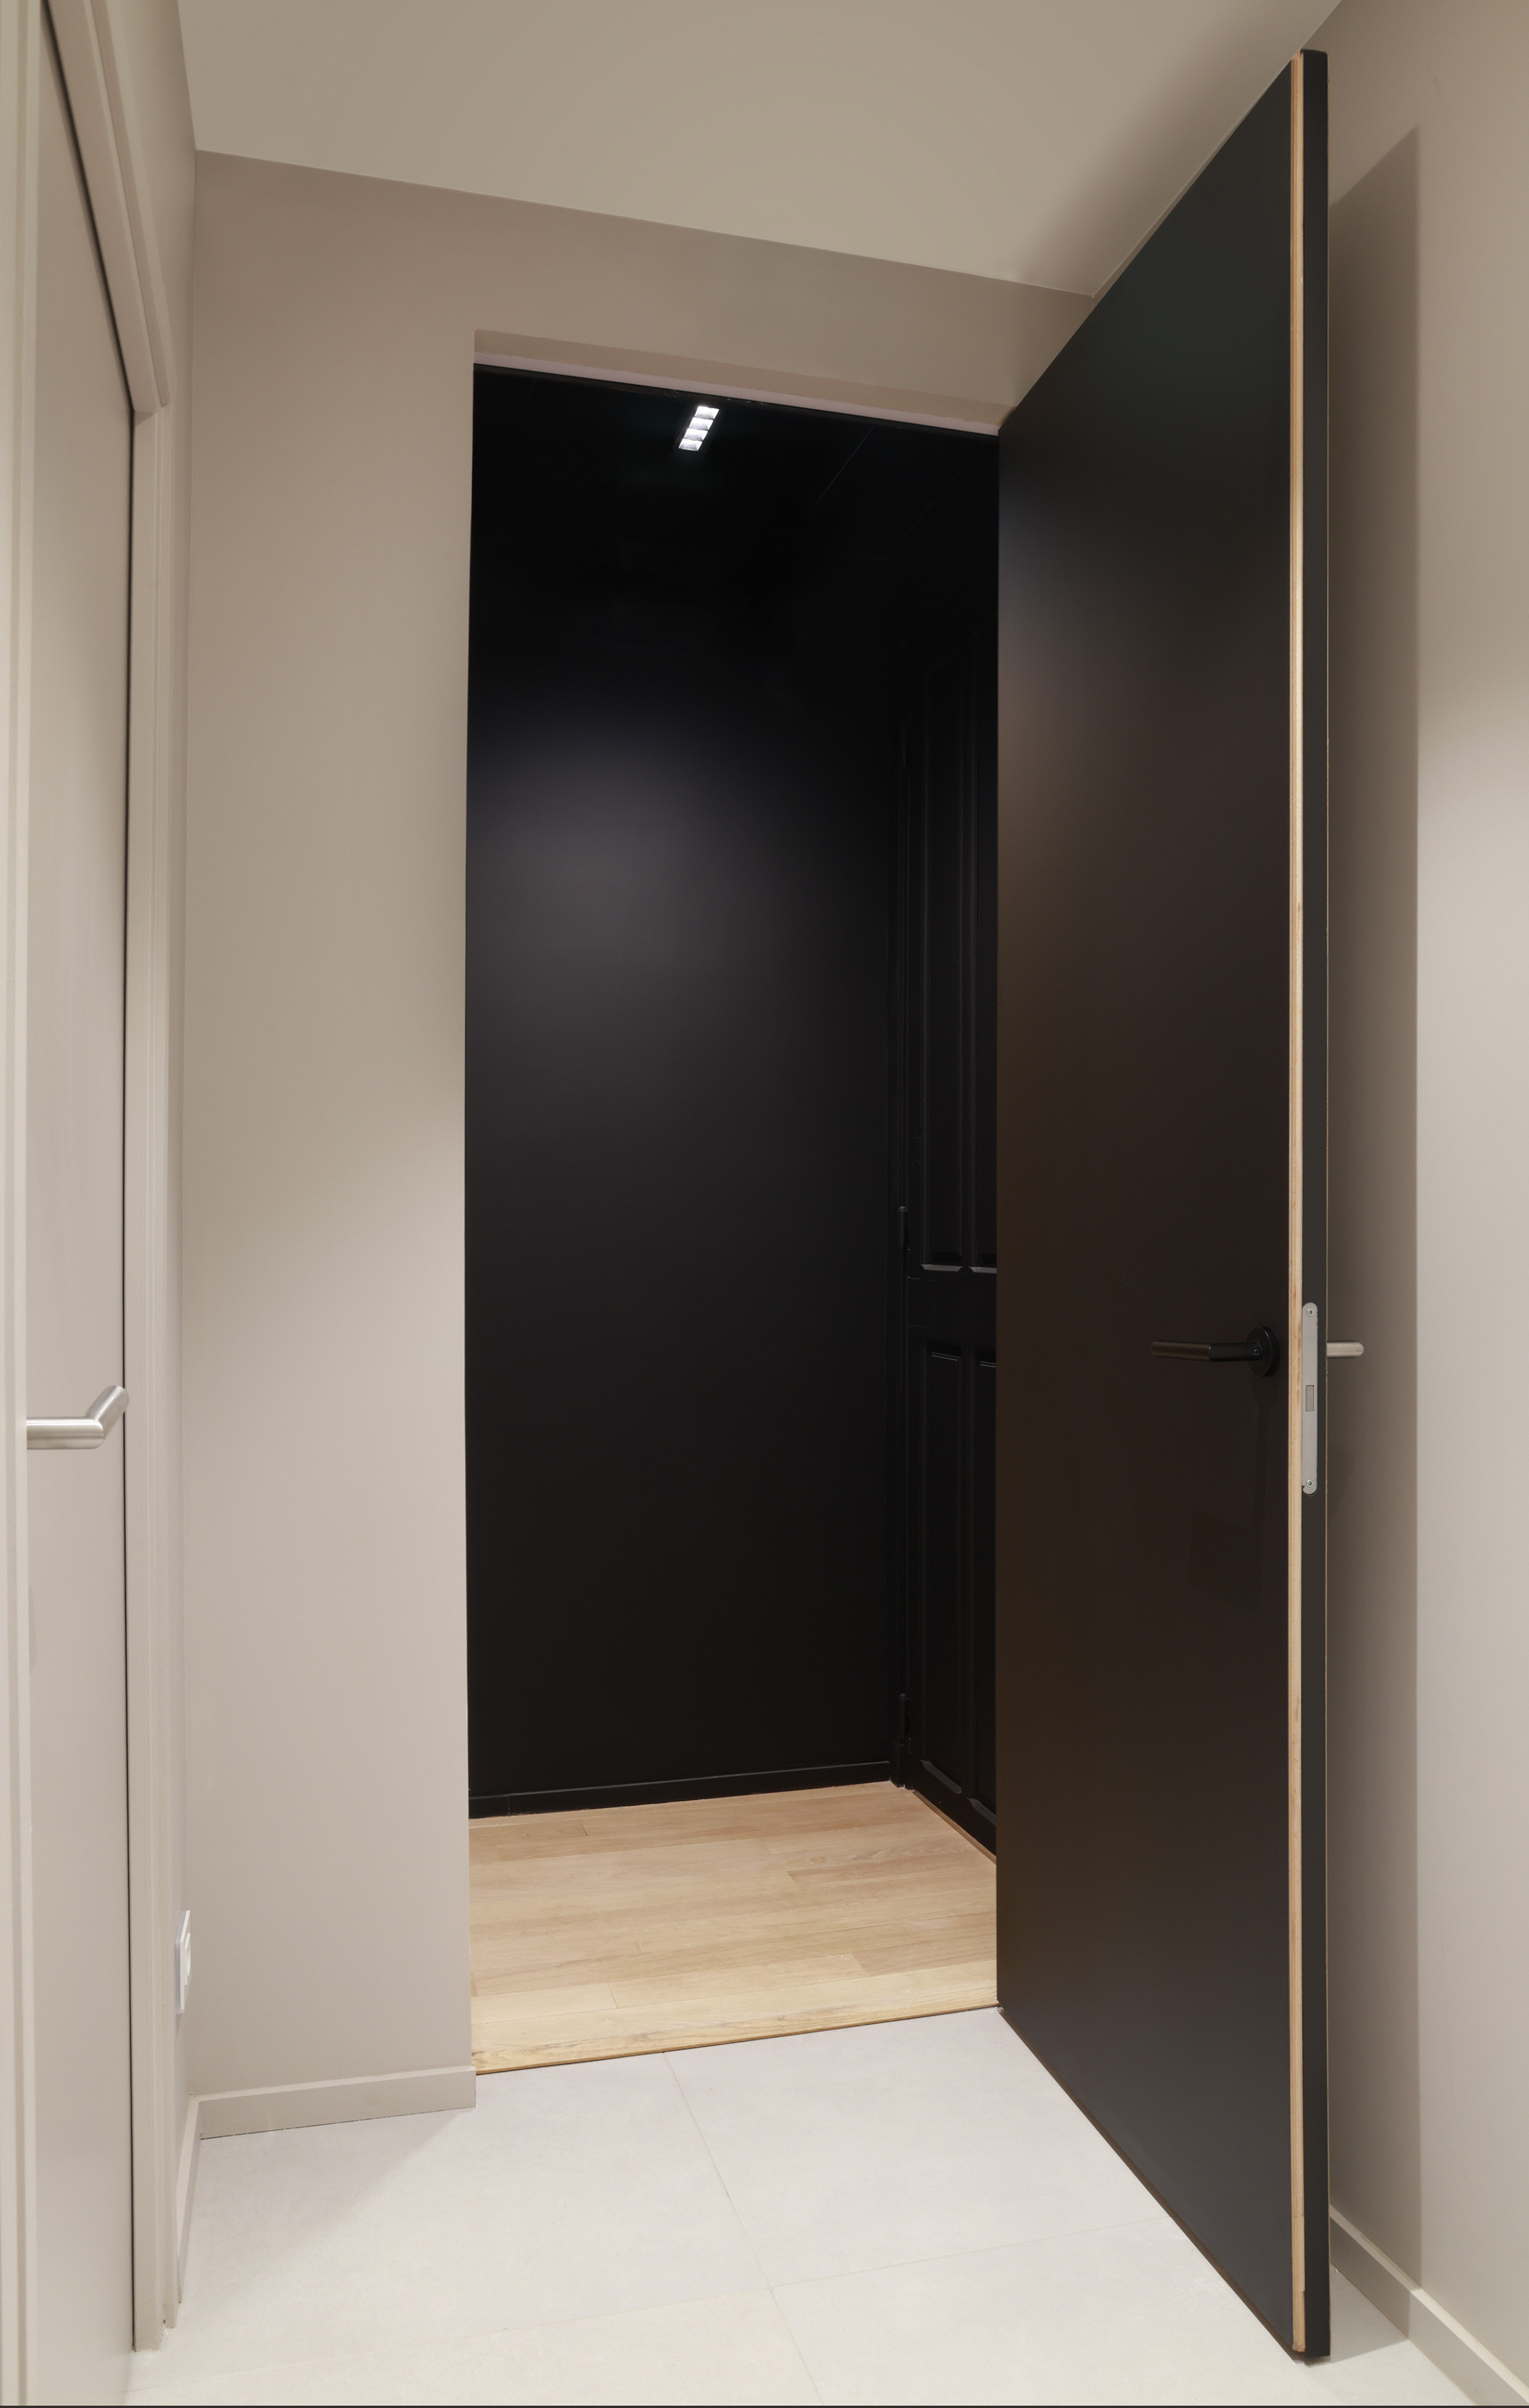 Zwarte deuren geïnstalleerd met onzichtbare deurkaders uit het invisidoor gamma van ARLU. De deur ligt gelijk met de wand en is nagenoeg onzichtbaar.